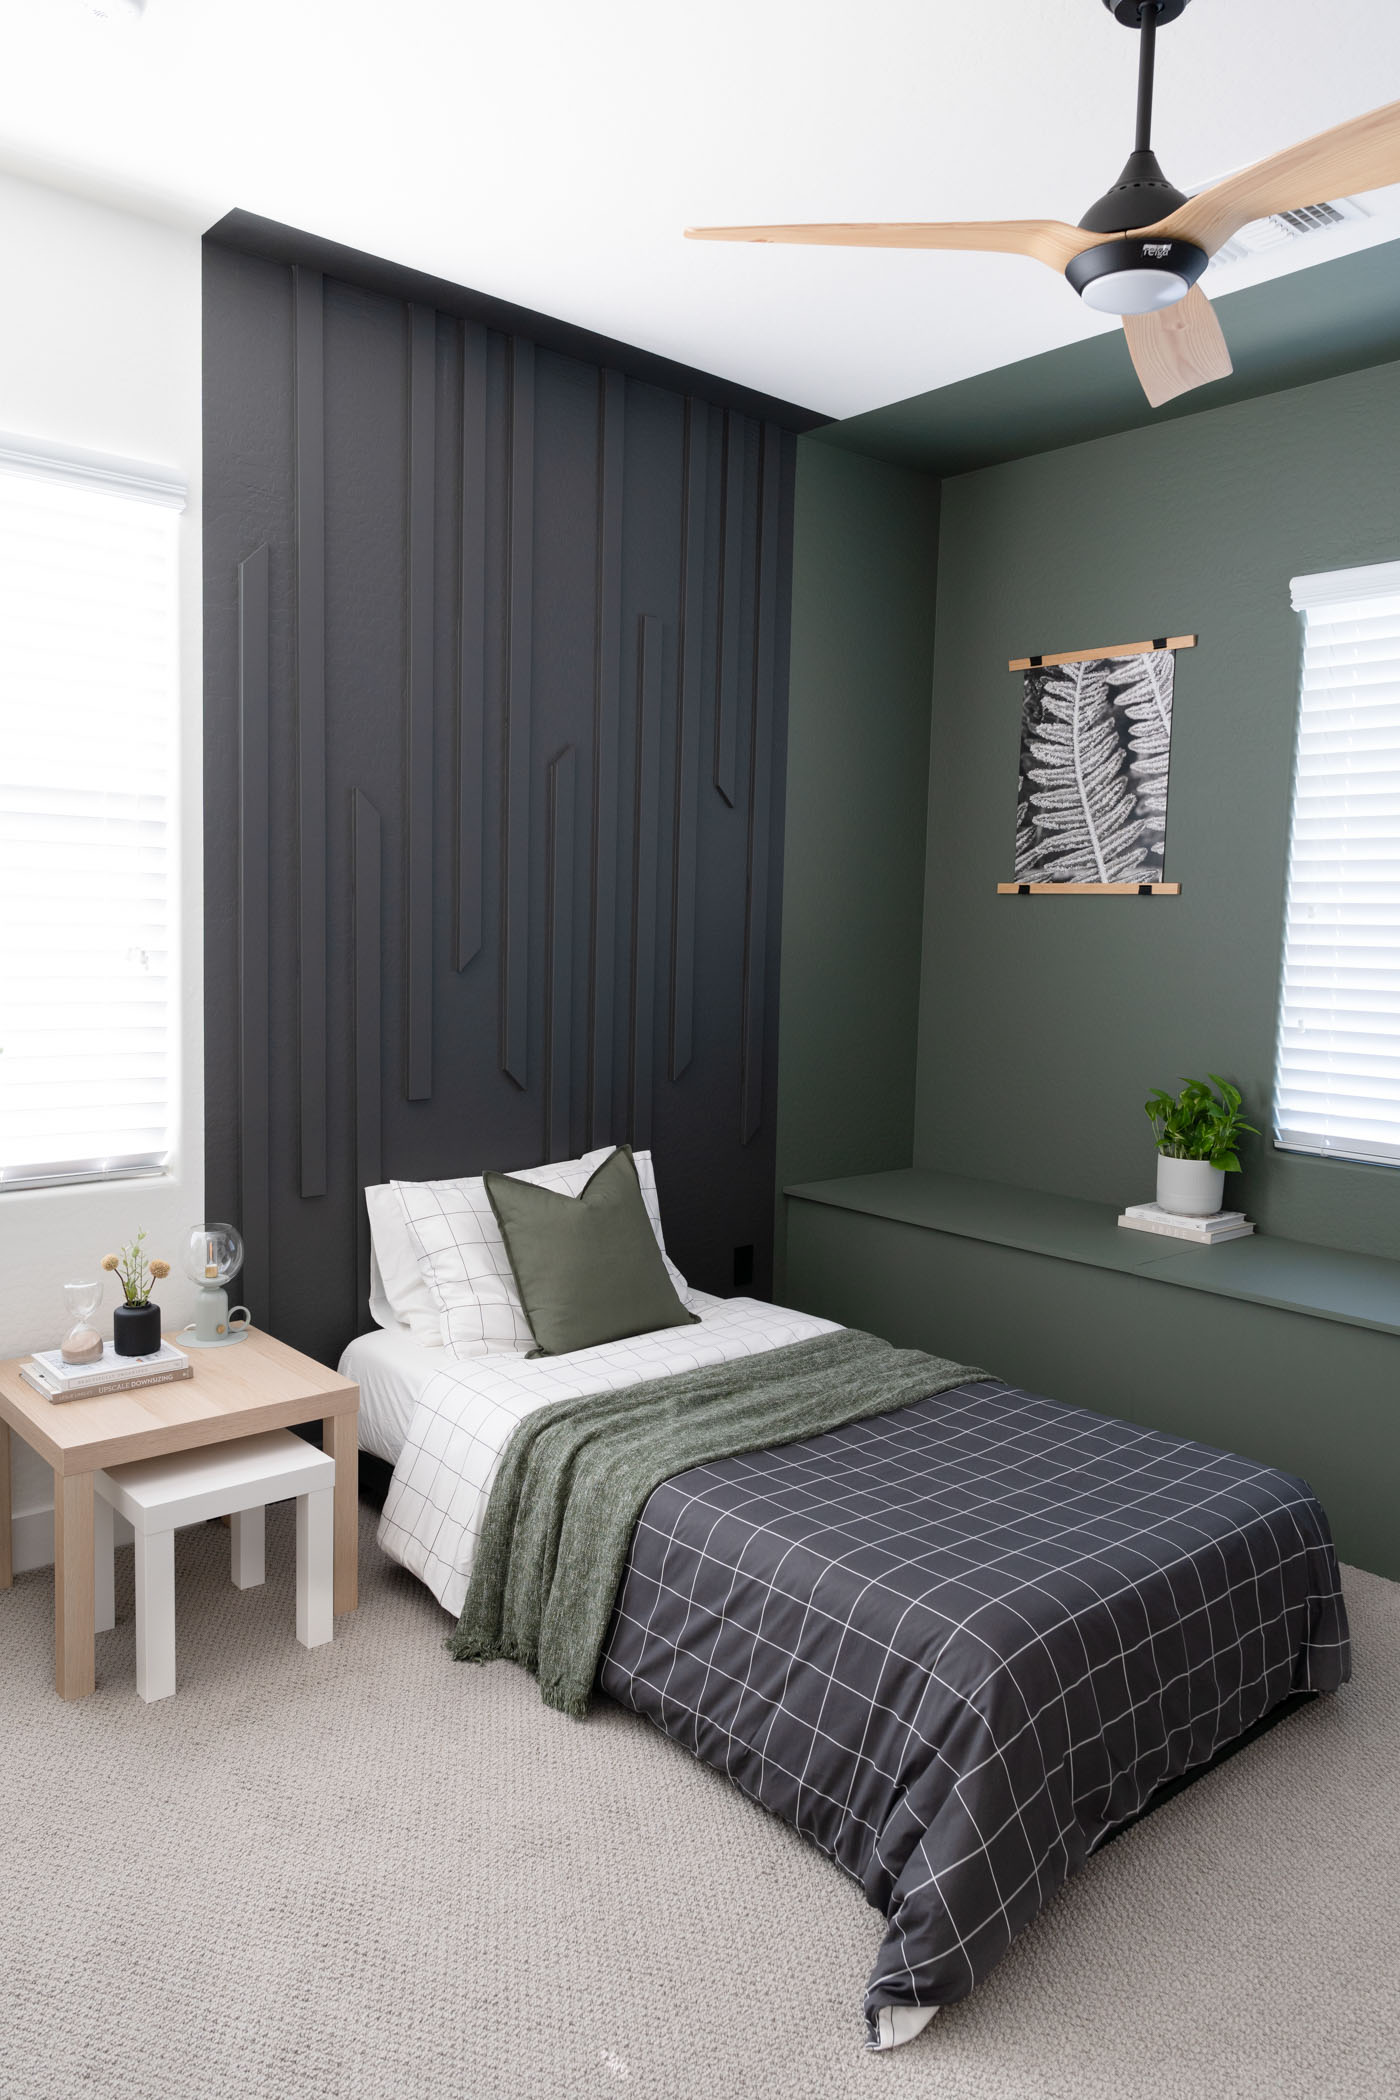 Decorated DIY updates in guest bedroom